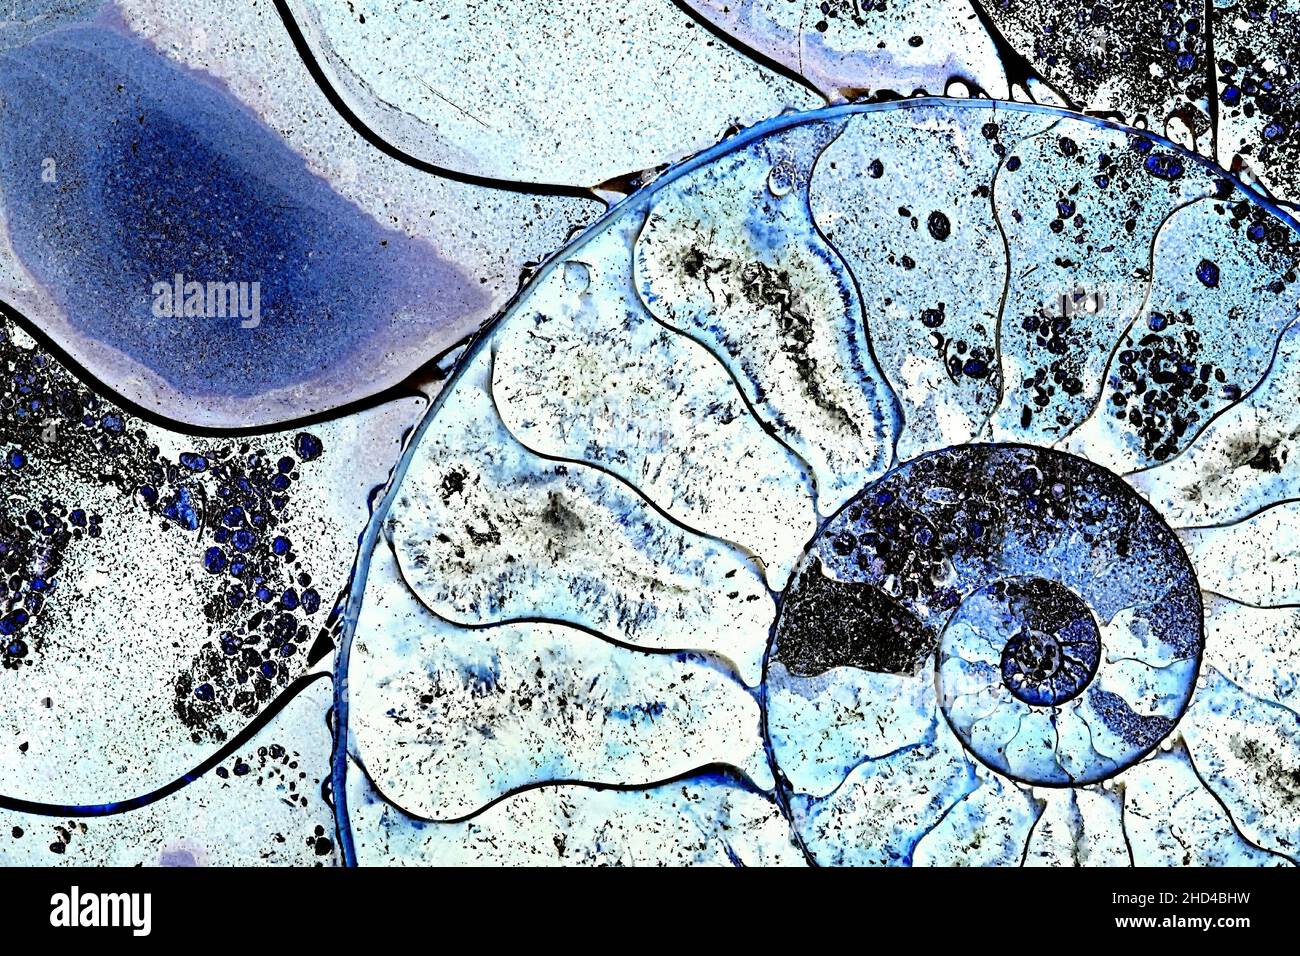 Ammonite fossile, tranché avec la structure interne révélé, couleurs manipulées Banque D'Images